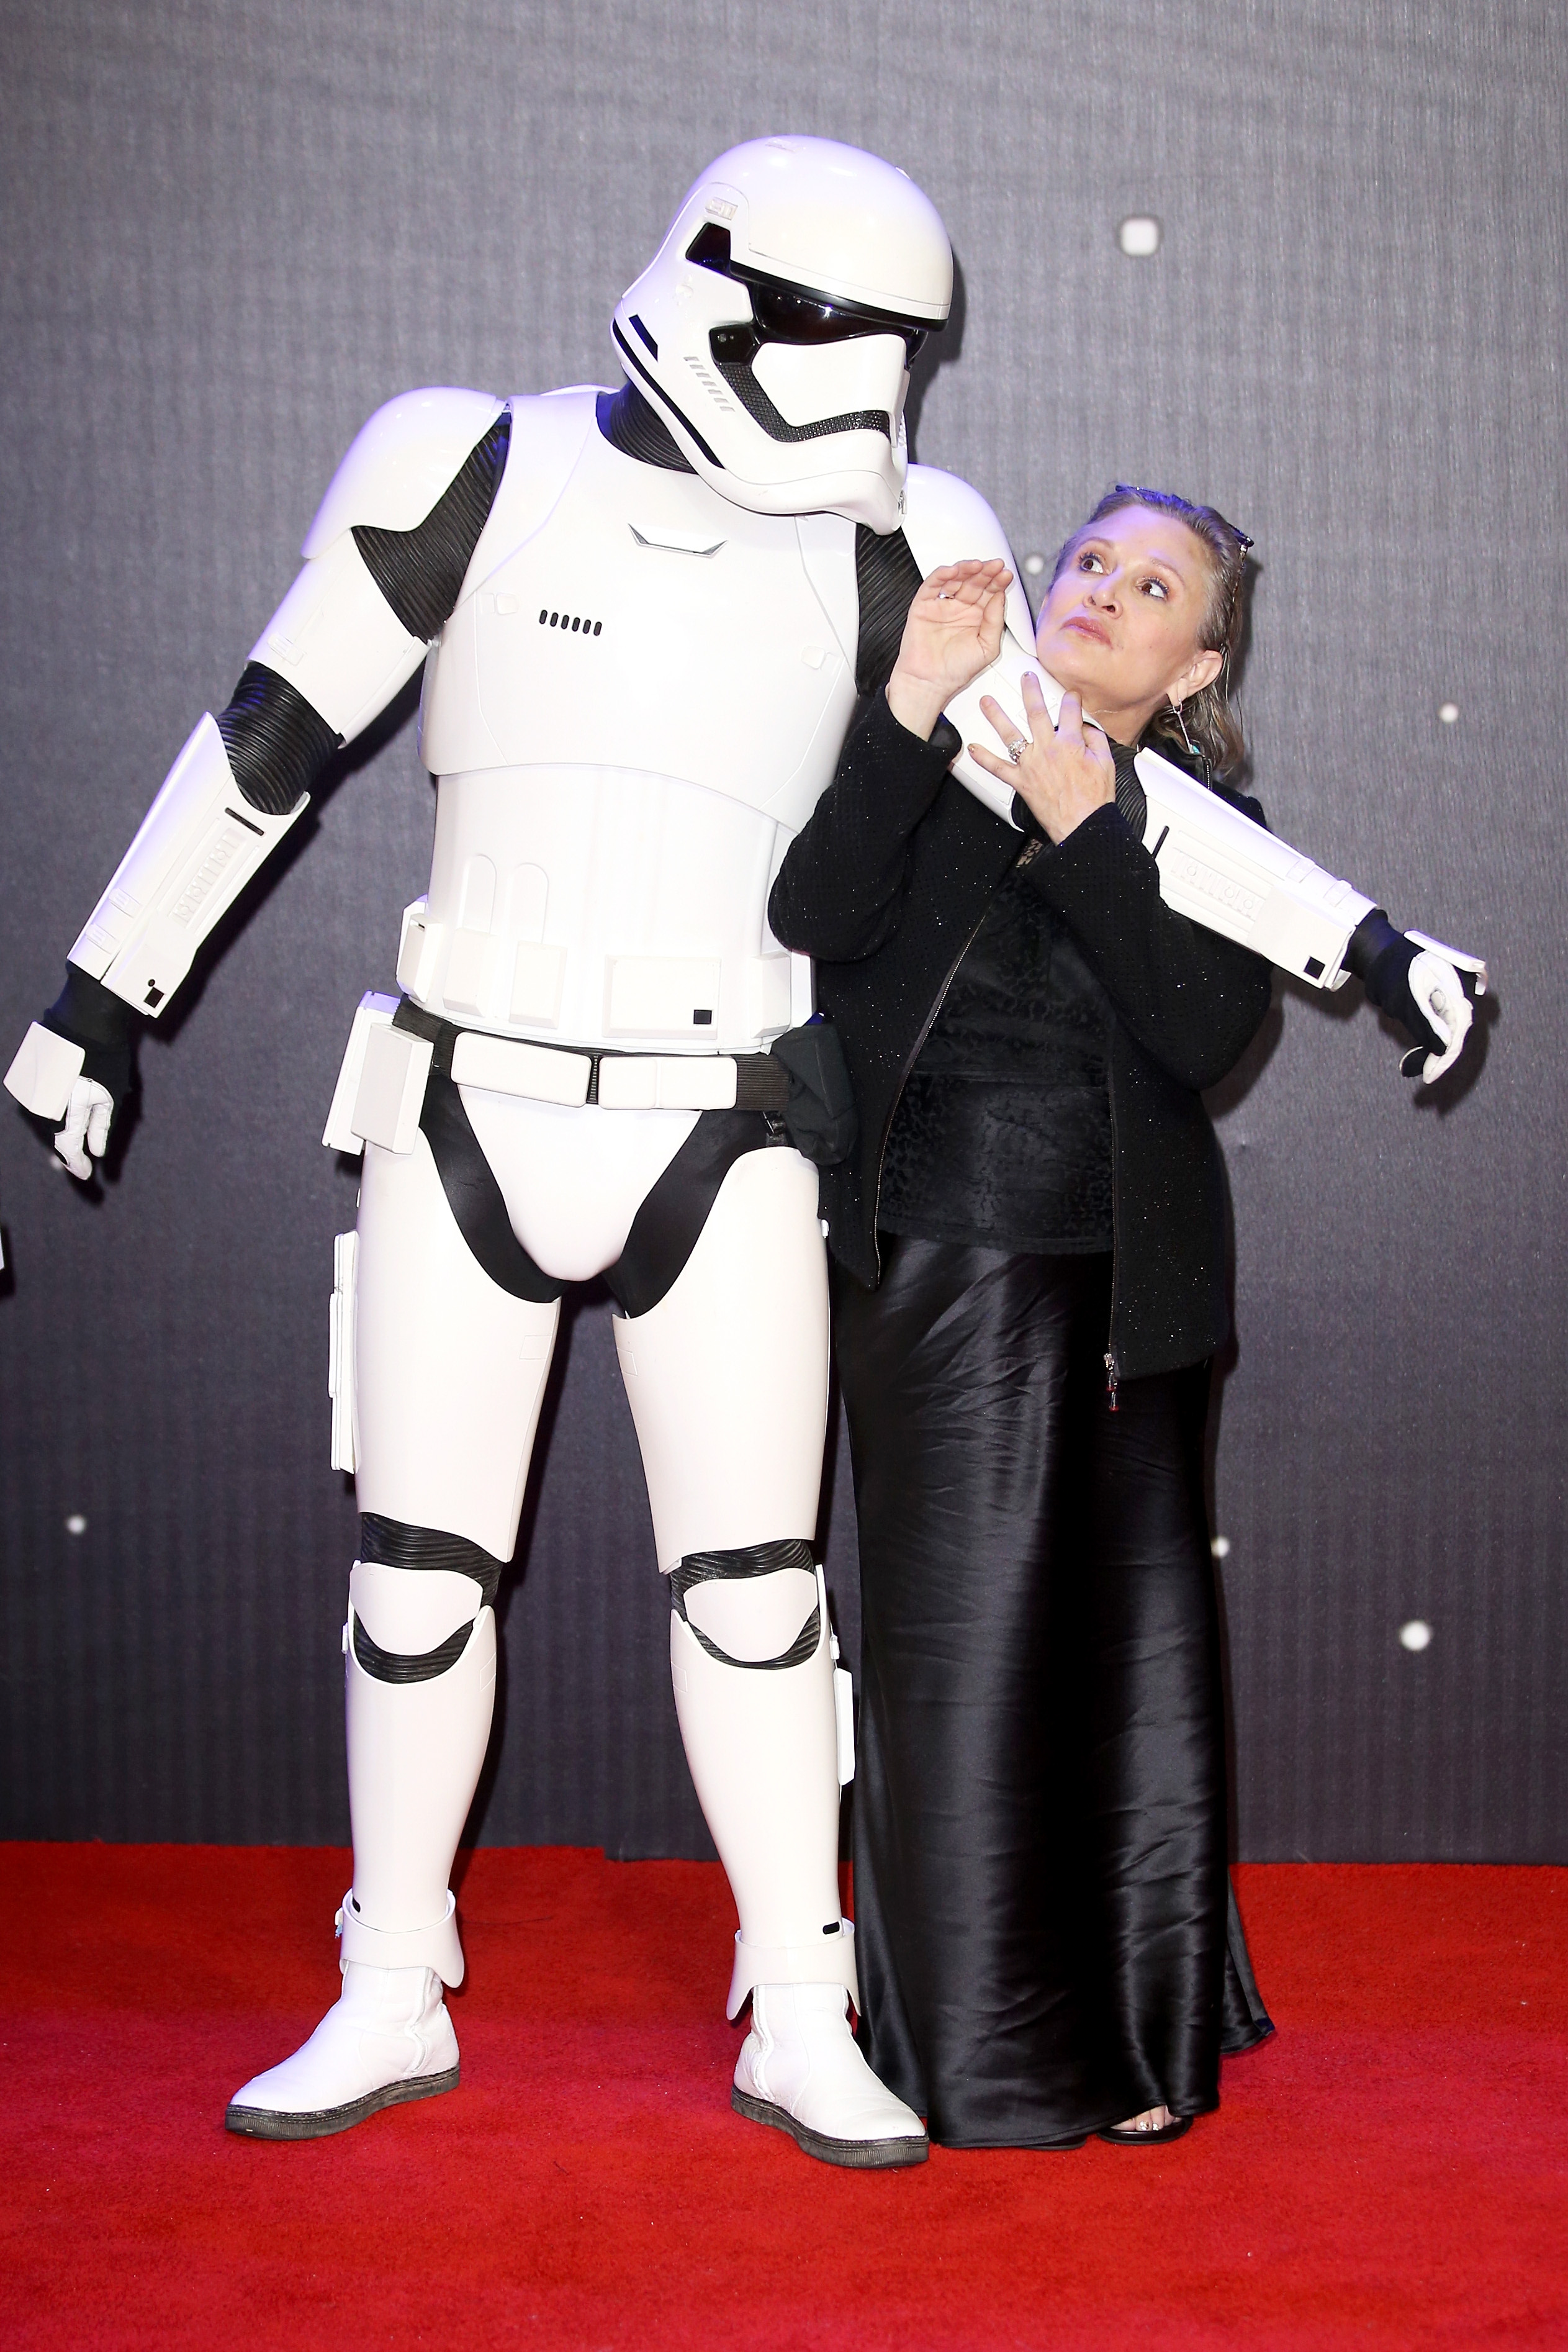 Carrie Fisher und ein Stormtrooper aus "Star Wars" bei der Europapremiere von "Star Wars: The Force Awakens" in London, 2015 | Quelle: Getty Images